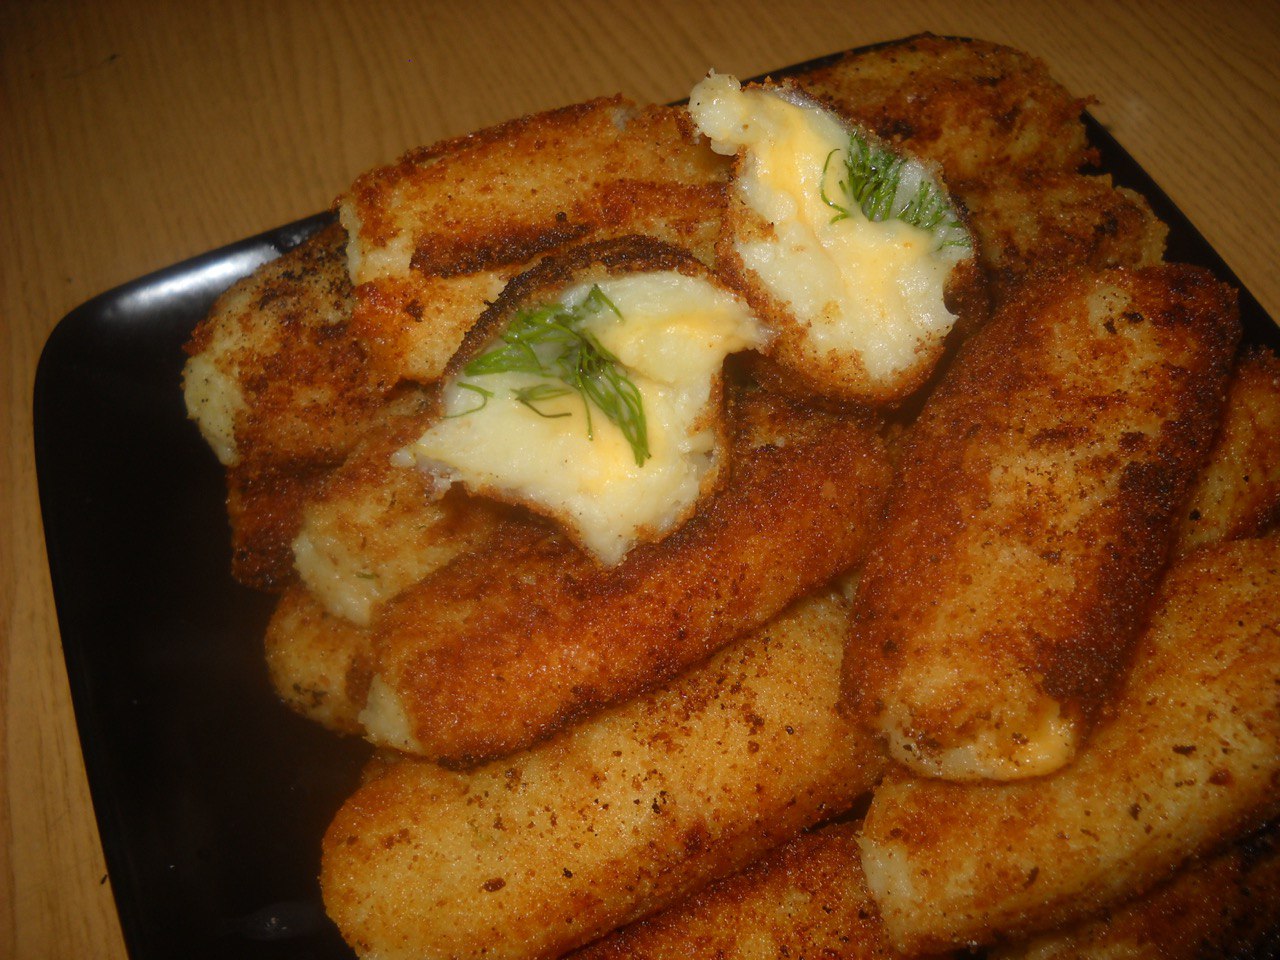 Картофельные палочки с сыром